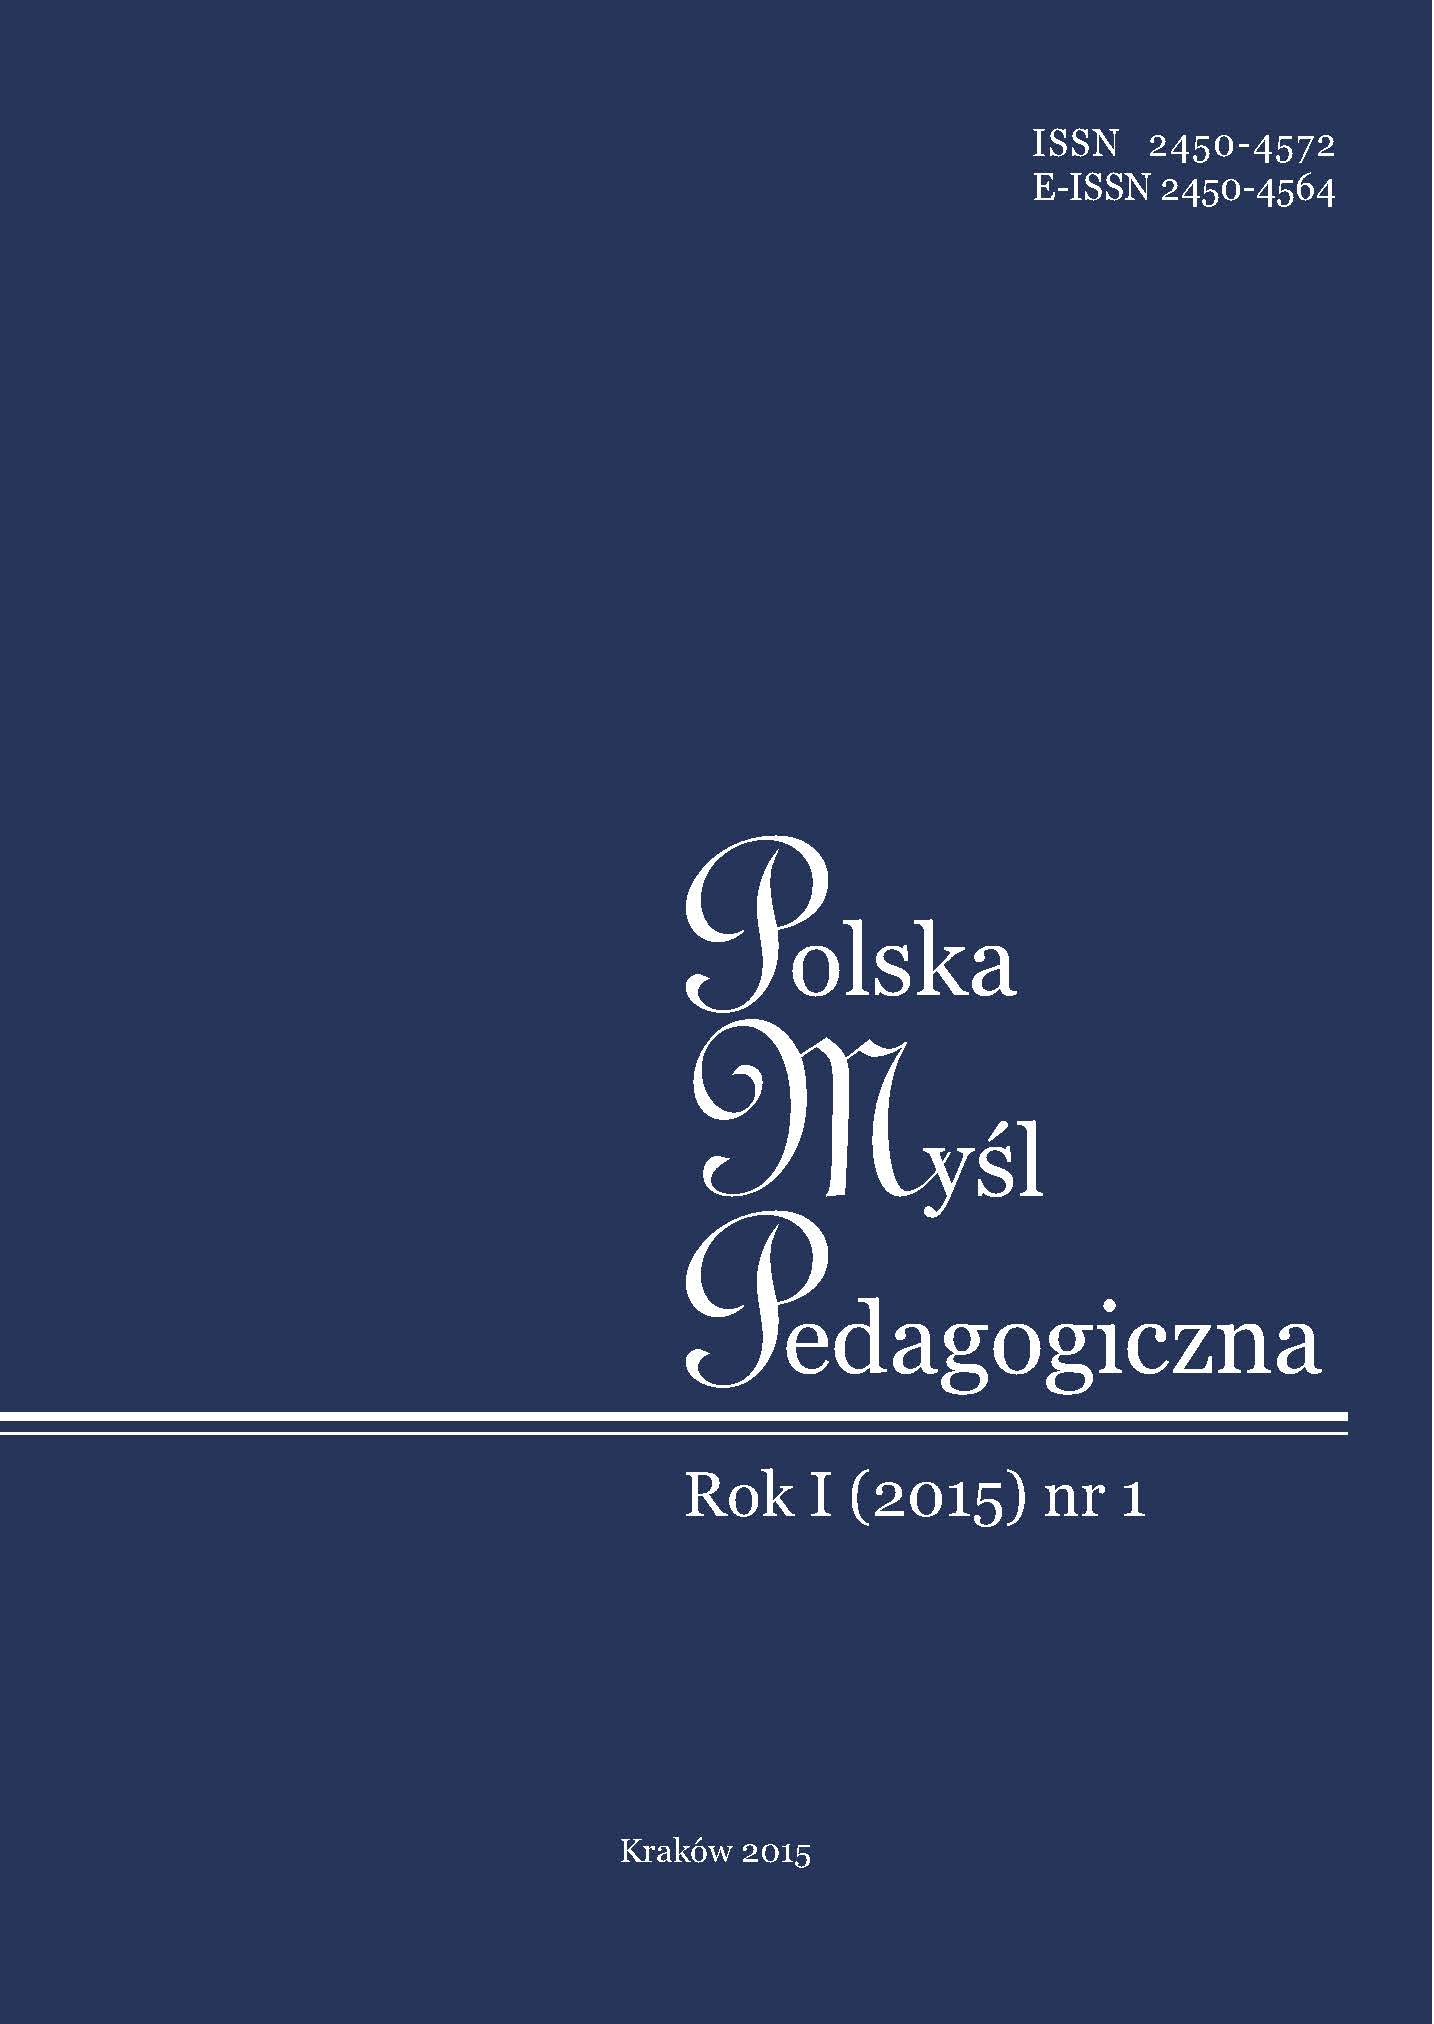 Polish Pedagogical Thought